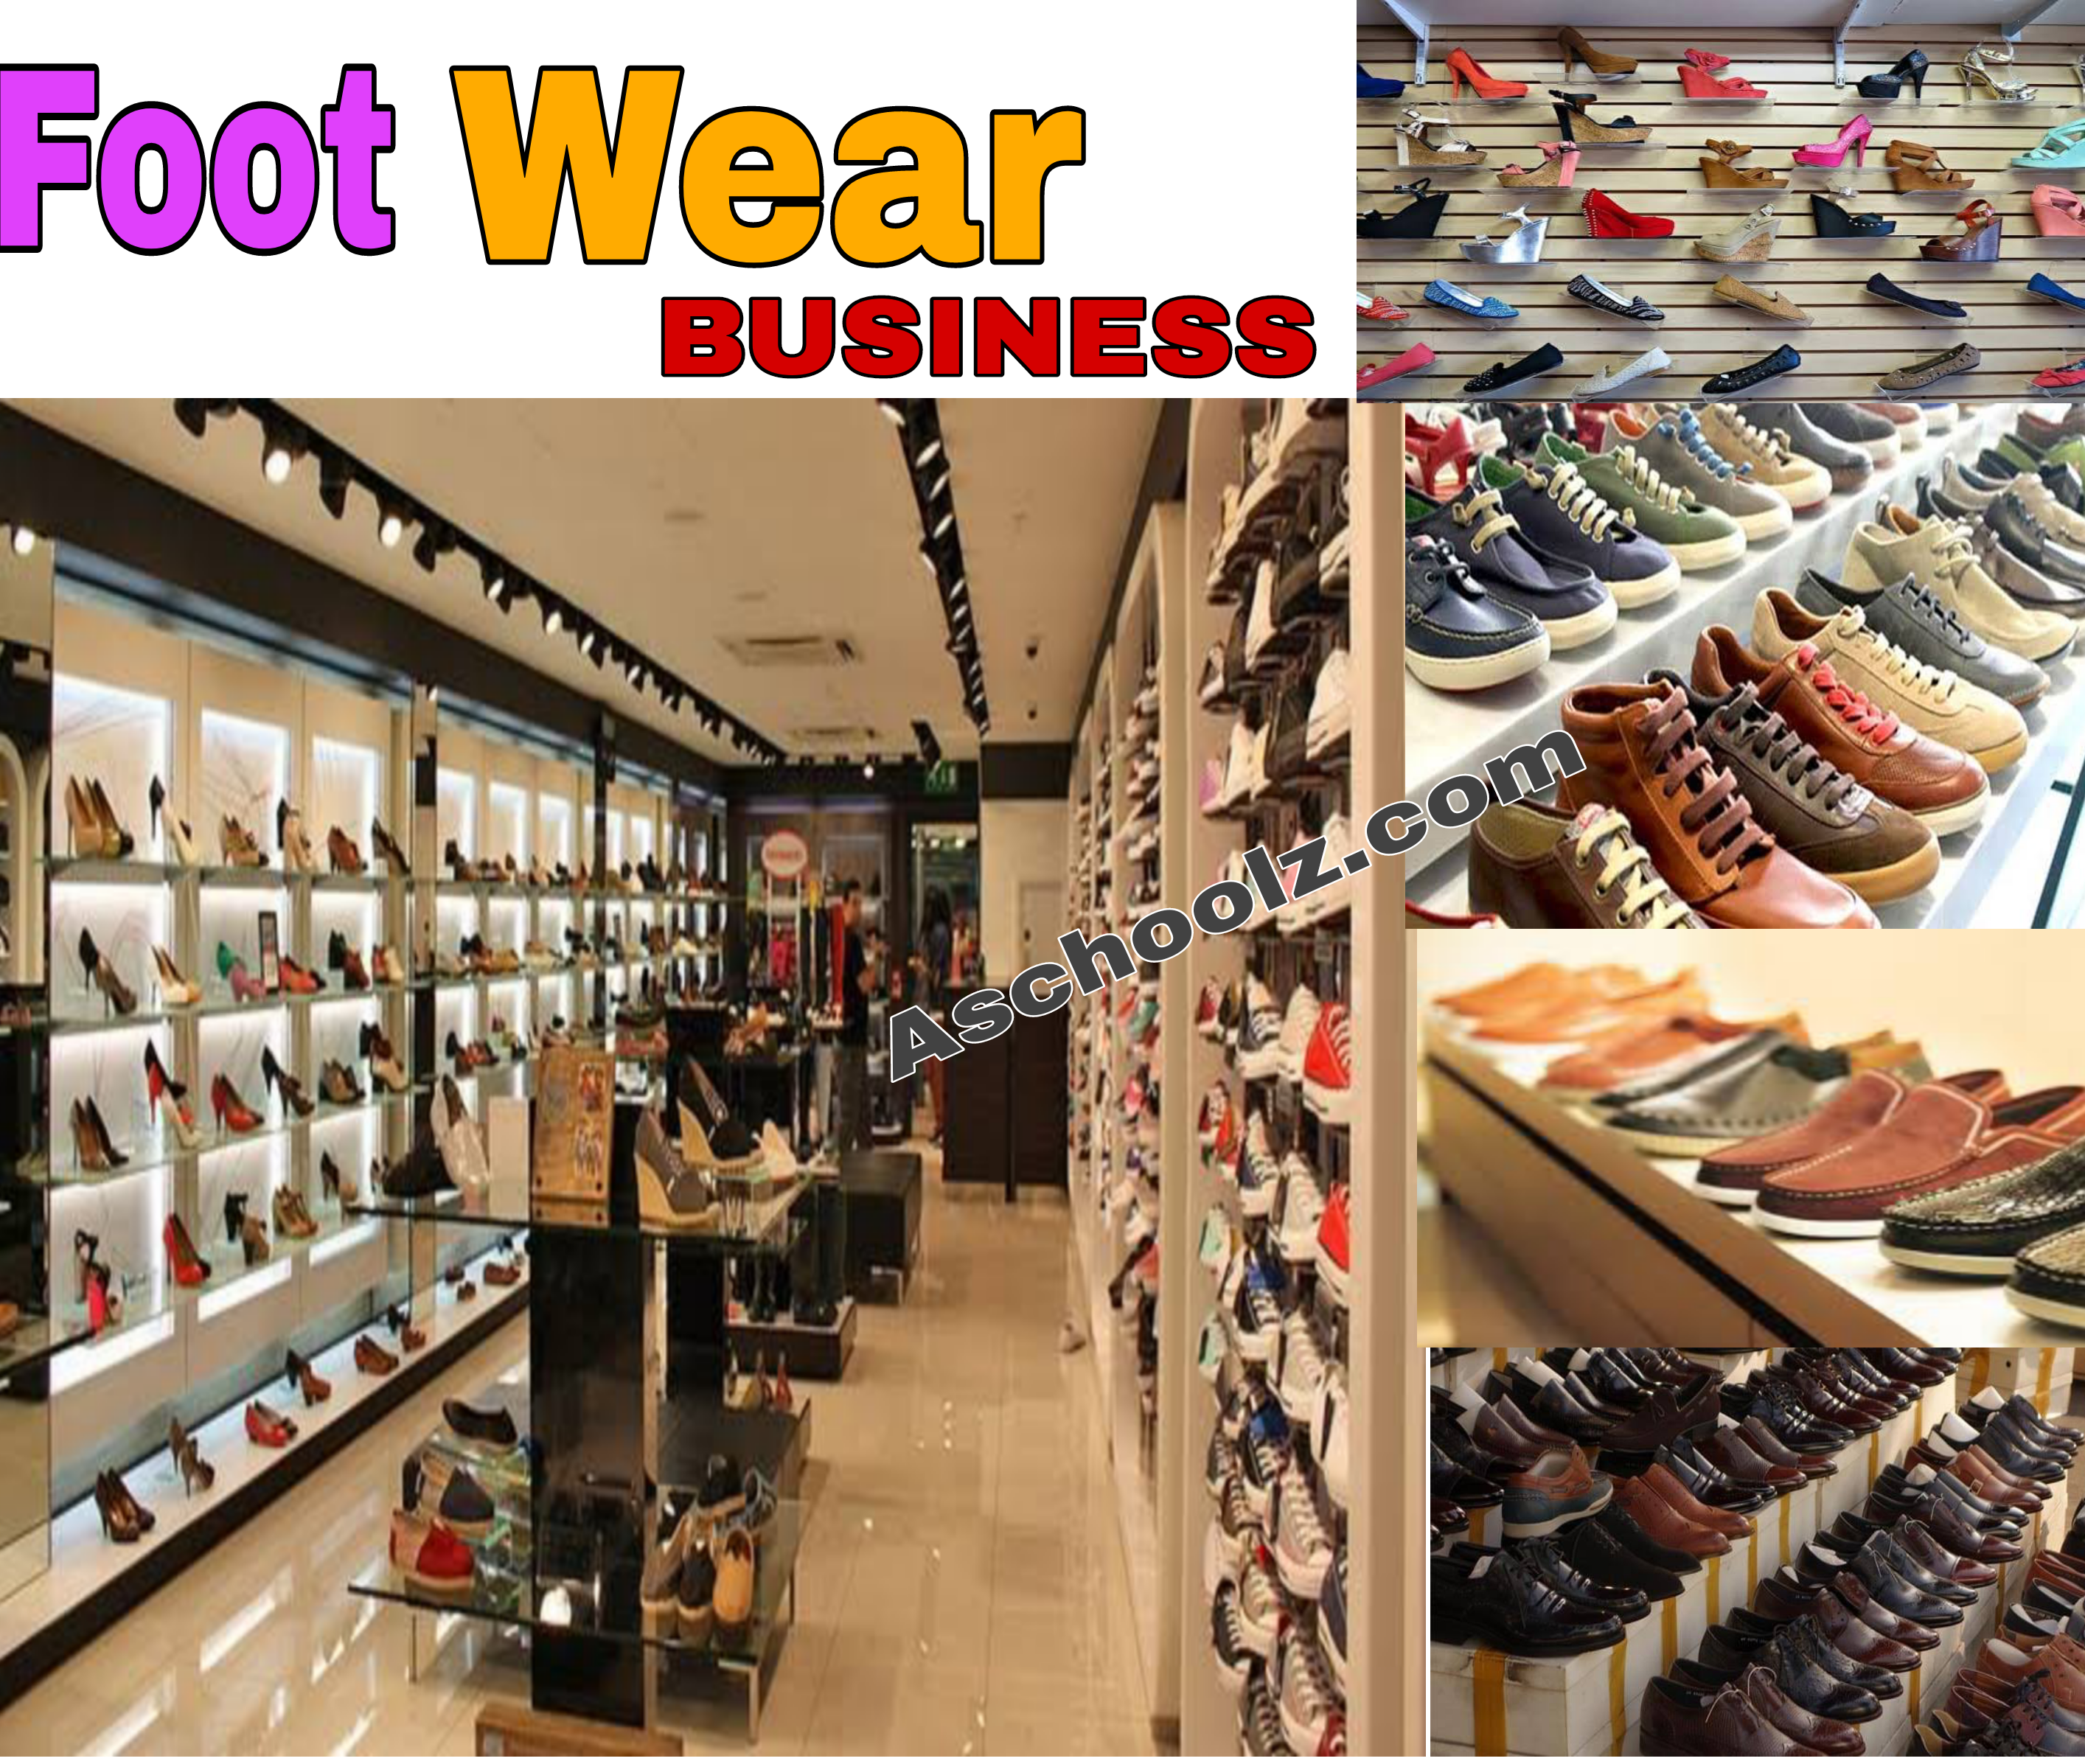 Is footwear business lucrative in Nigeria